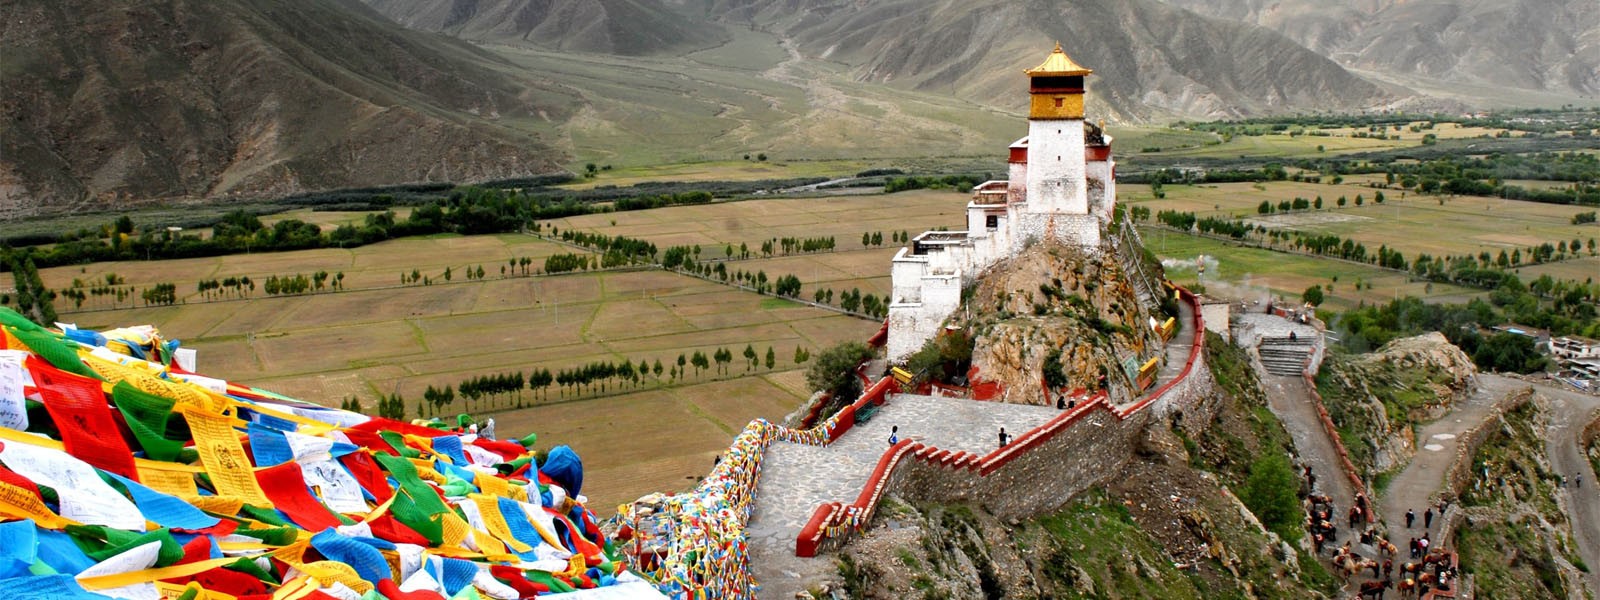 Ganden - Samye Valley Trekking in Tibet